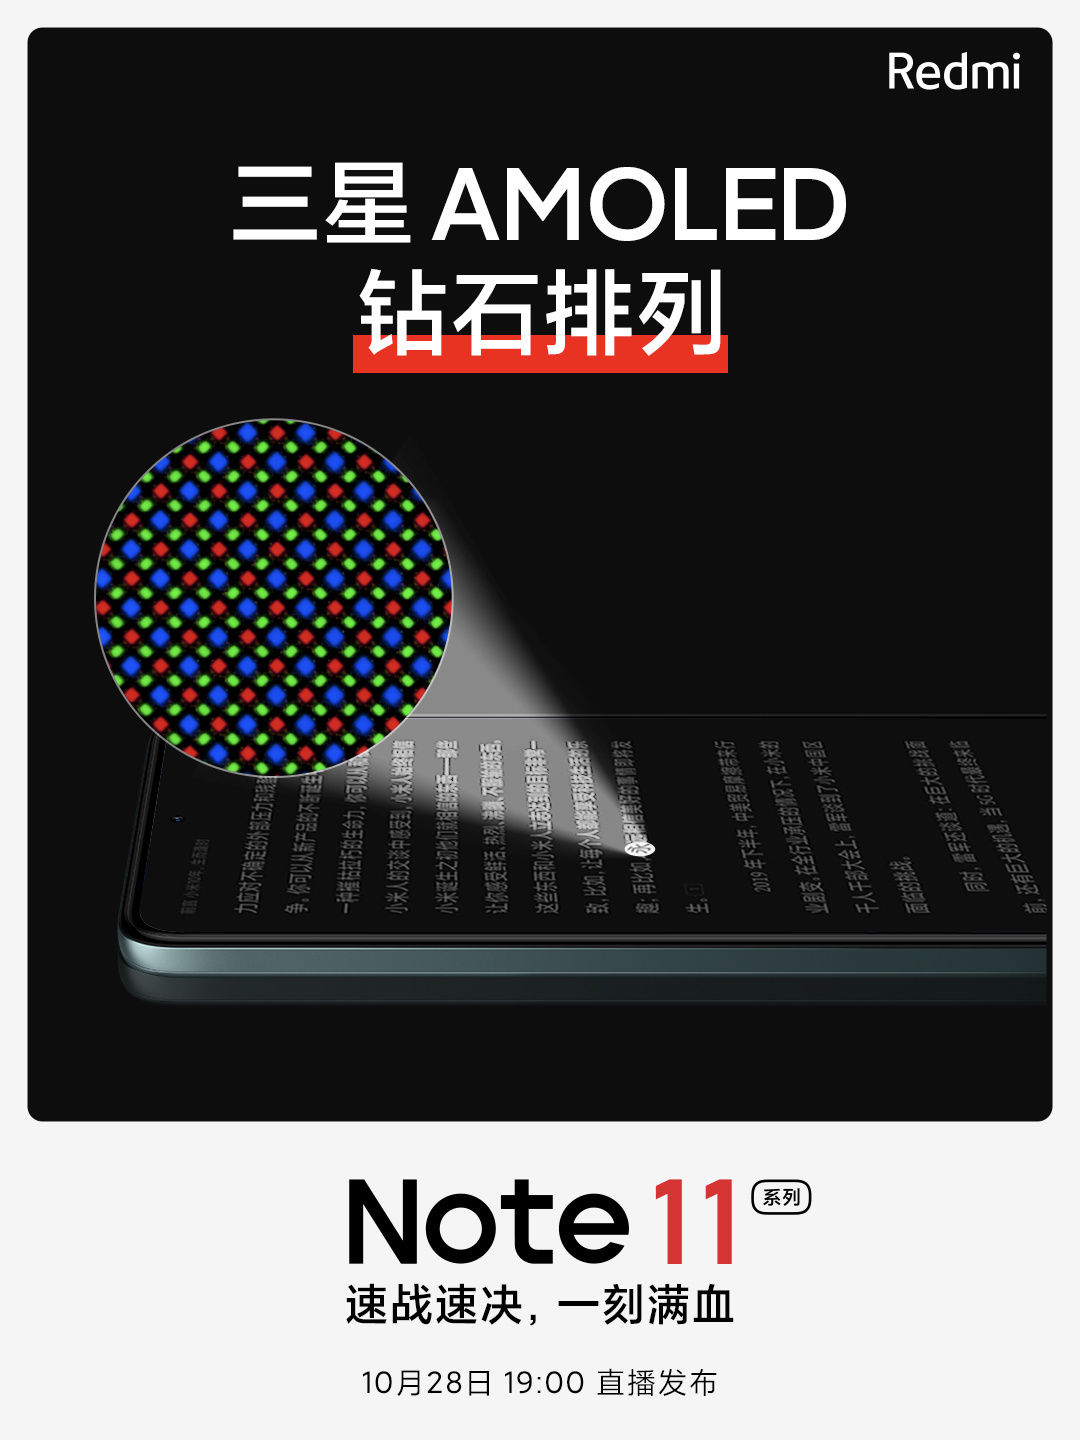 nfc|Redmi Note 11 系列确认支持蓝牙 5.2 协议，延迟更低